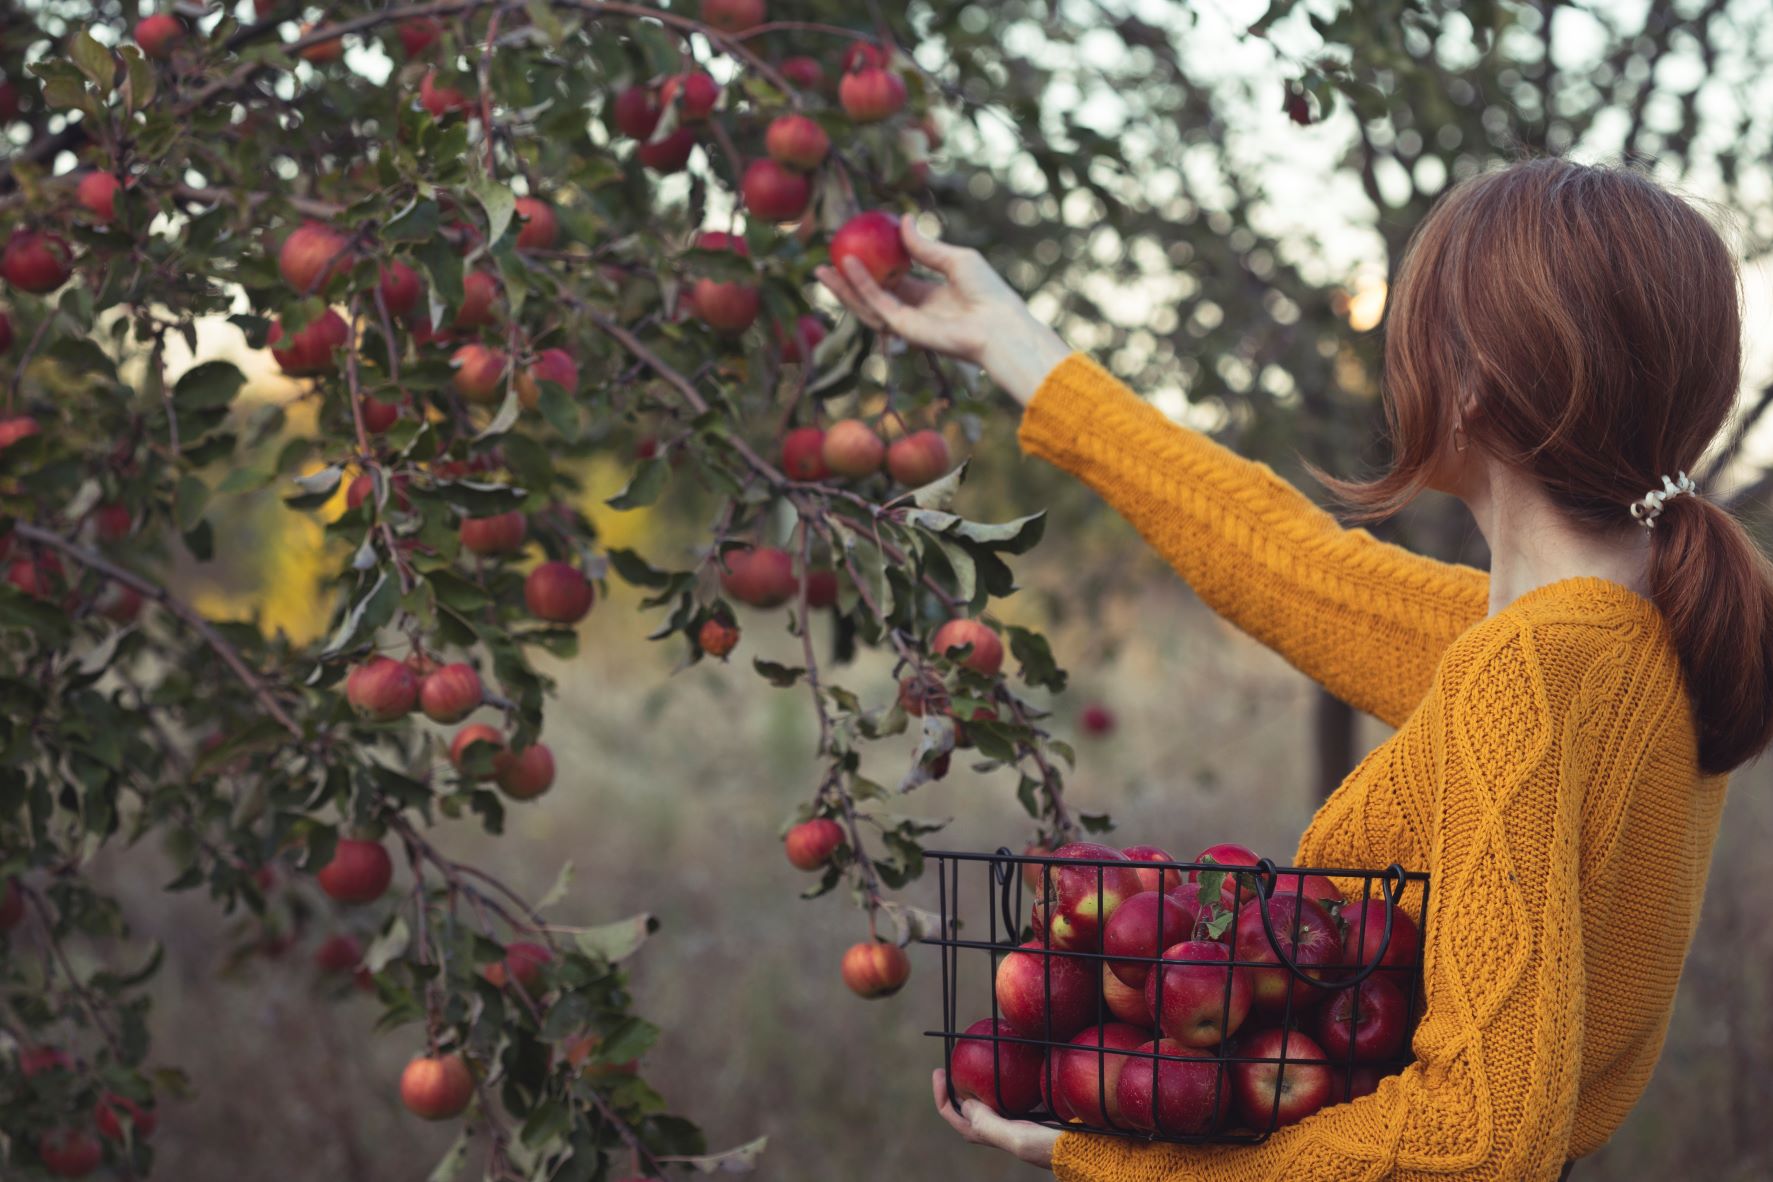 How do farmers grow apple trees